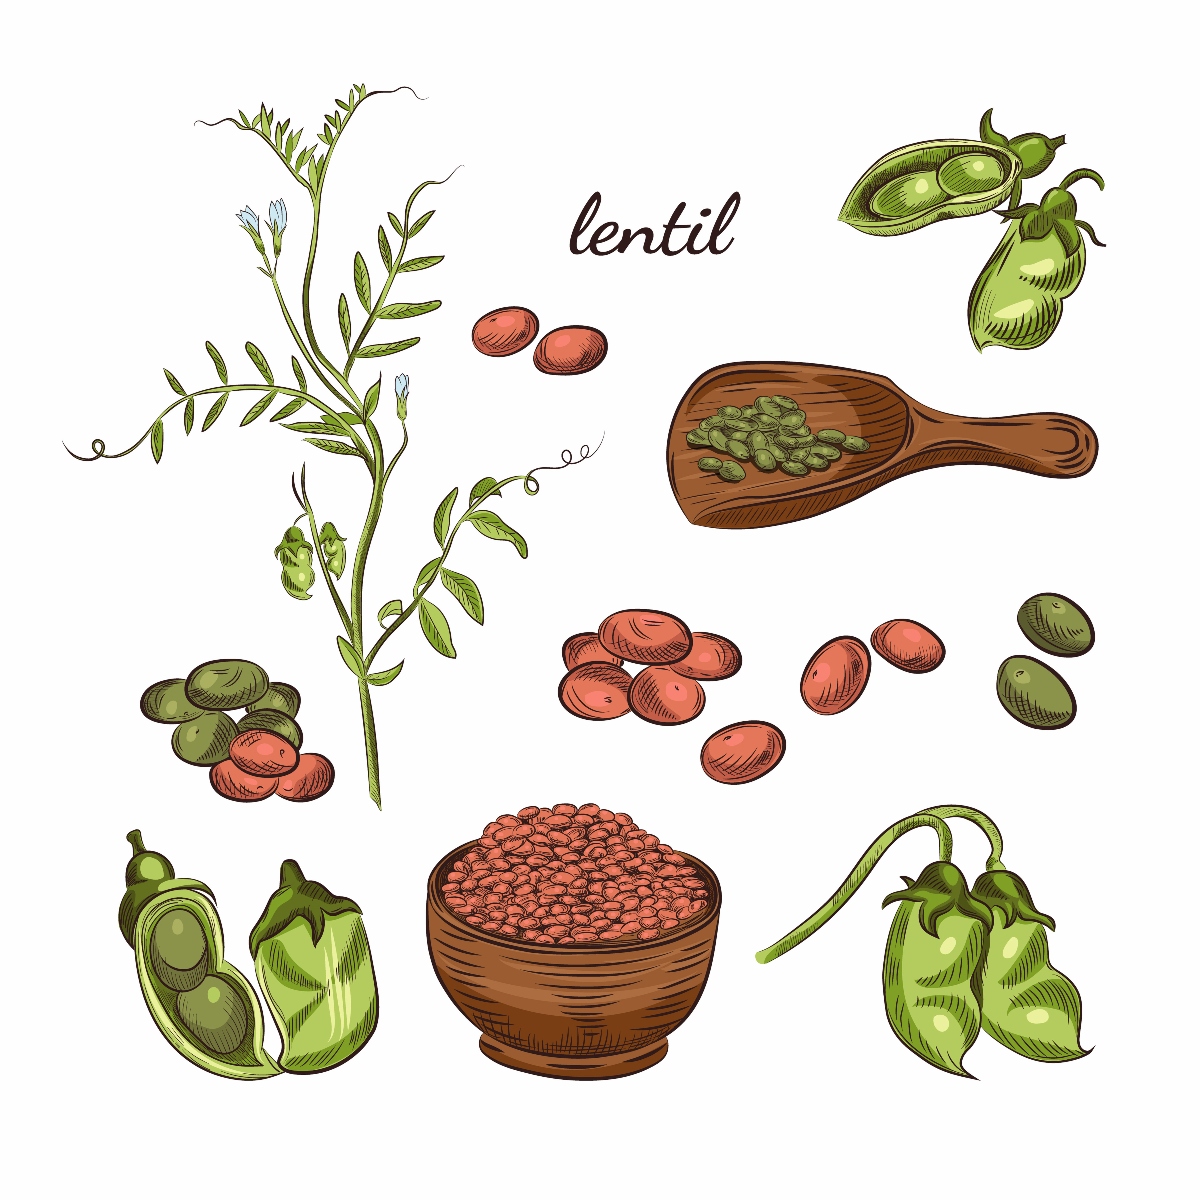 lenticchie: botanica 